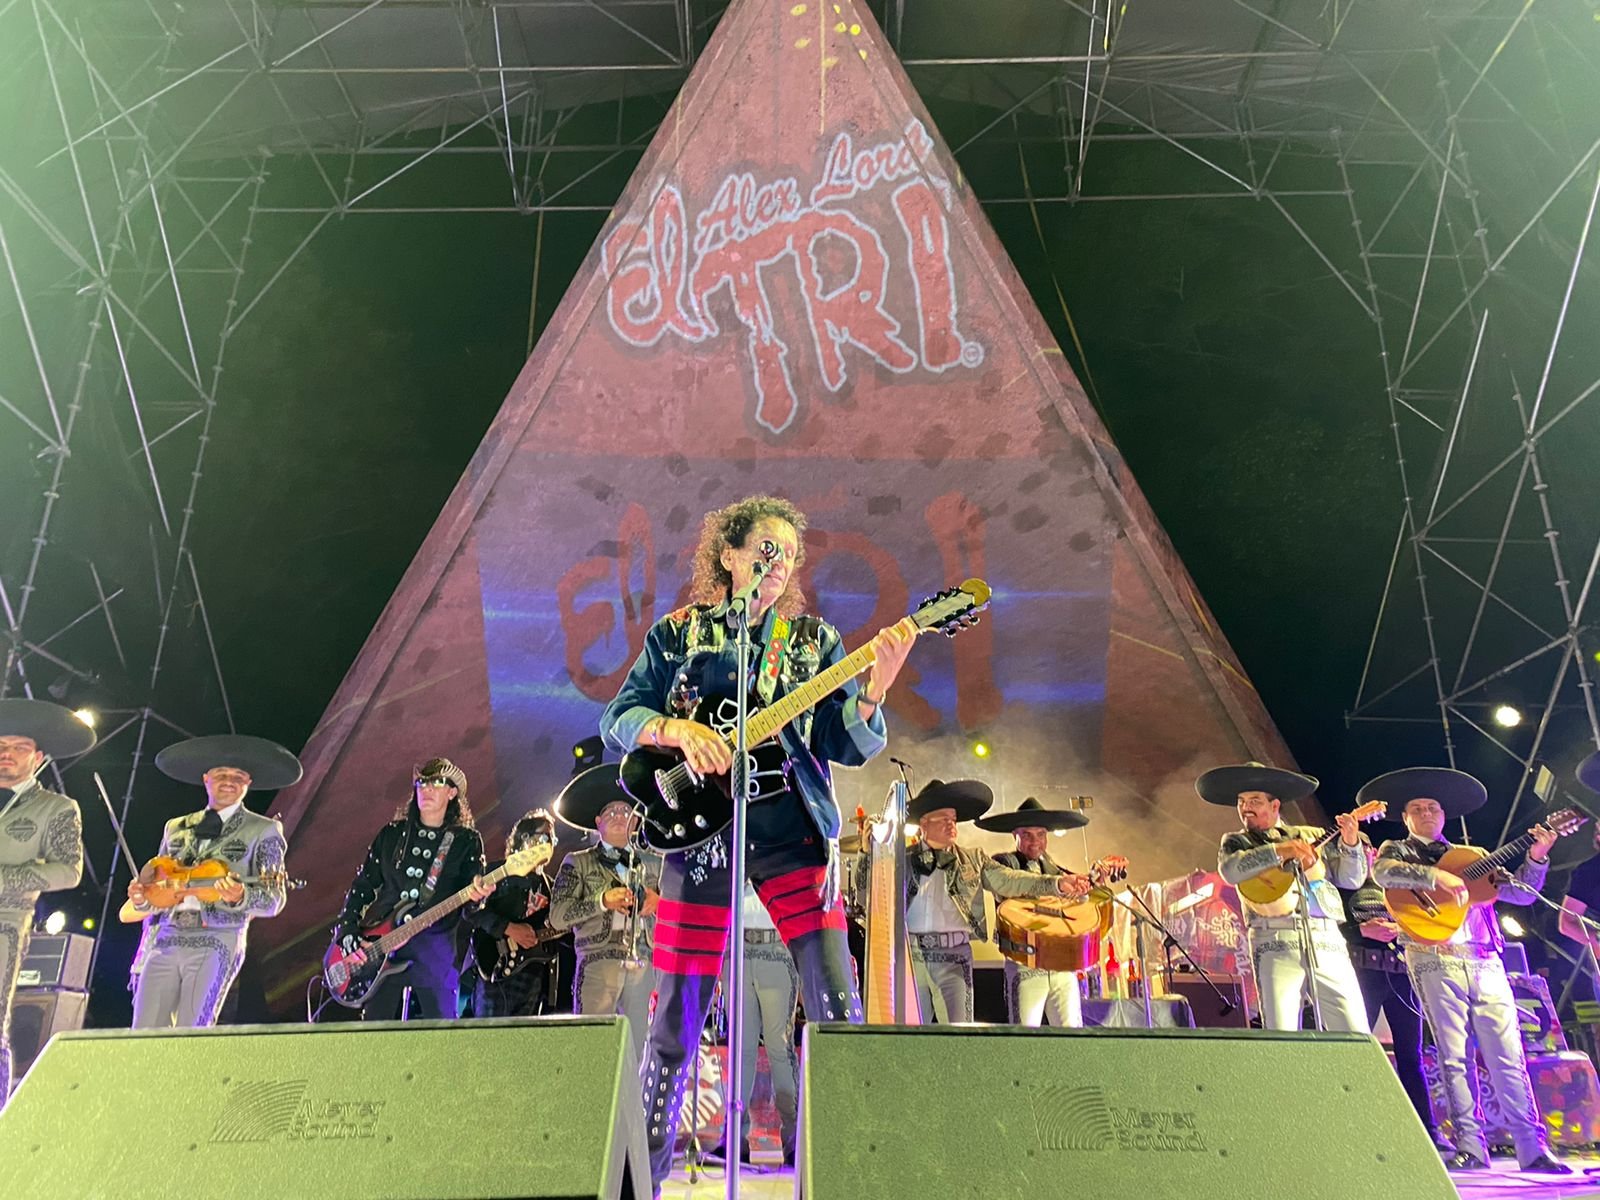 Alex Lora y El Tri reabrieron con un concierto histórico la Concha Acústica en Guadalajara